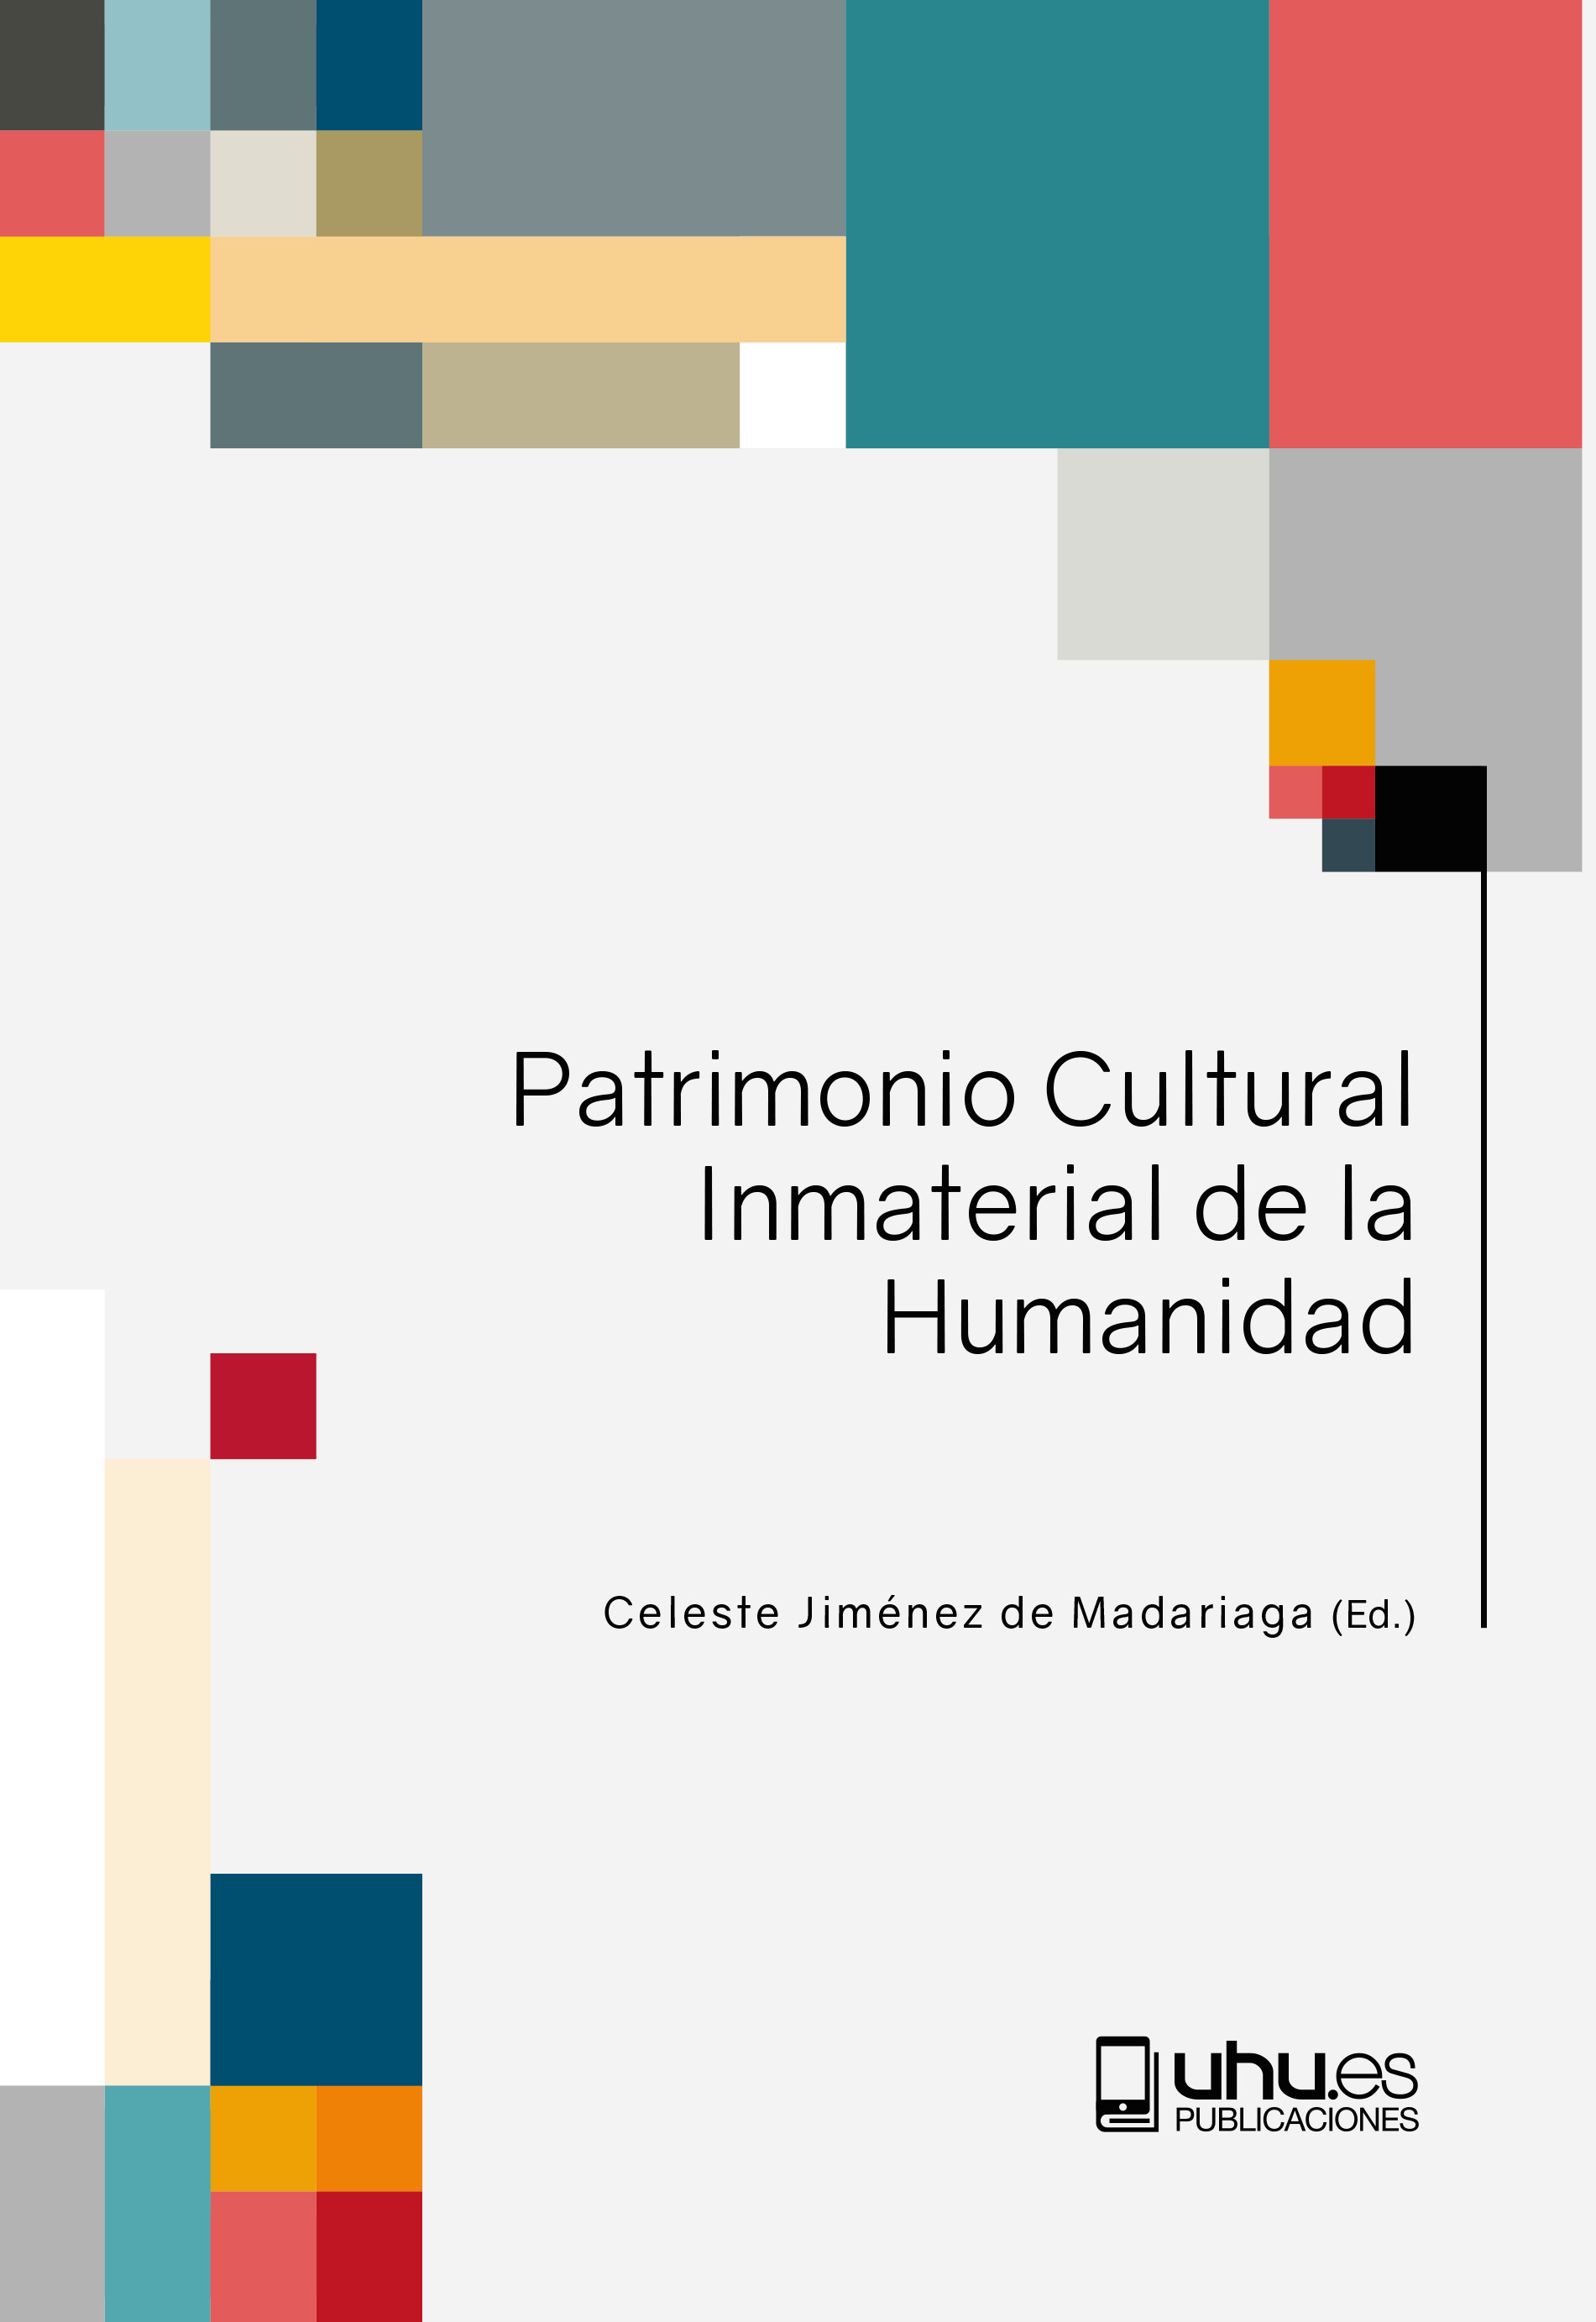 Imagen de portada del libro Patrimonio cultural inmaterial de la humanidad